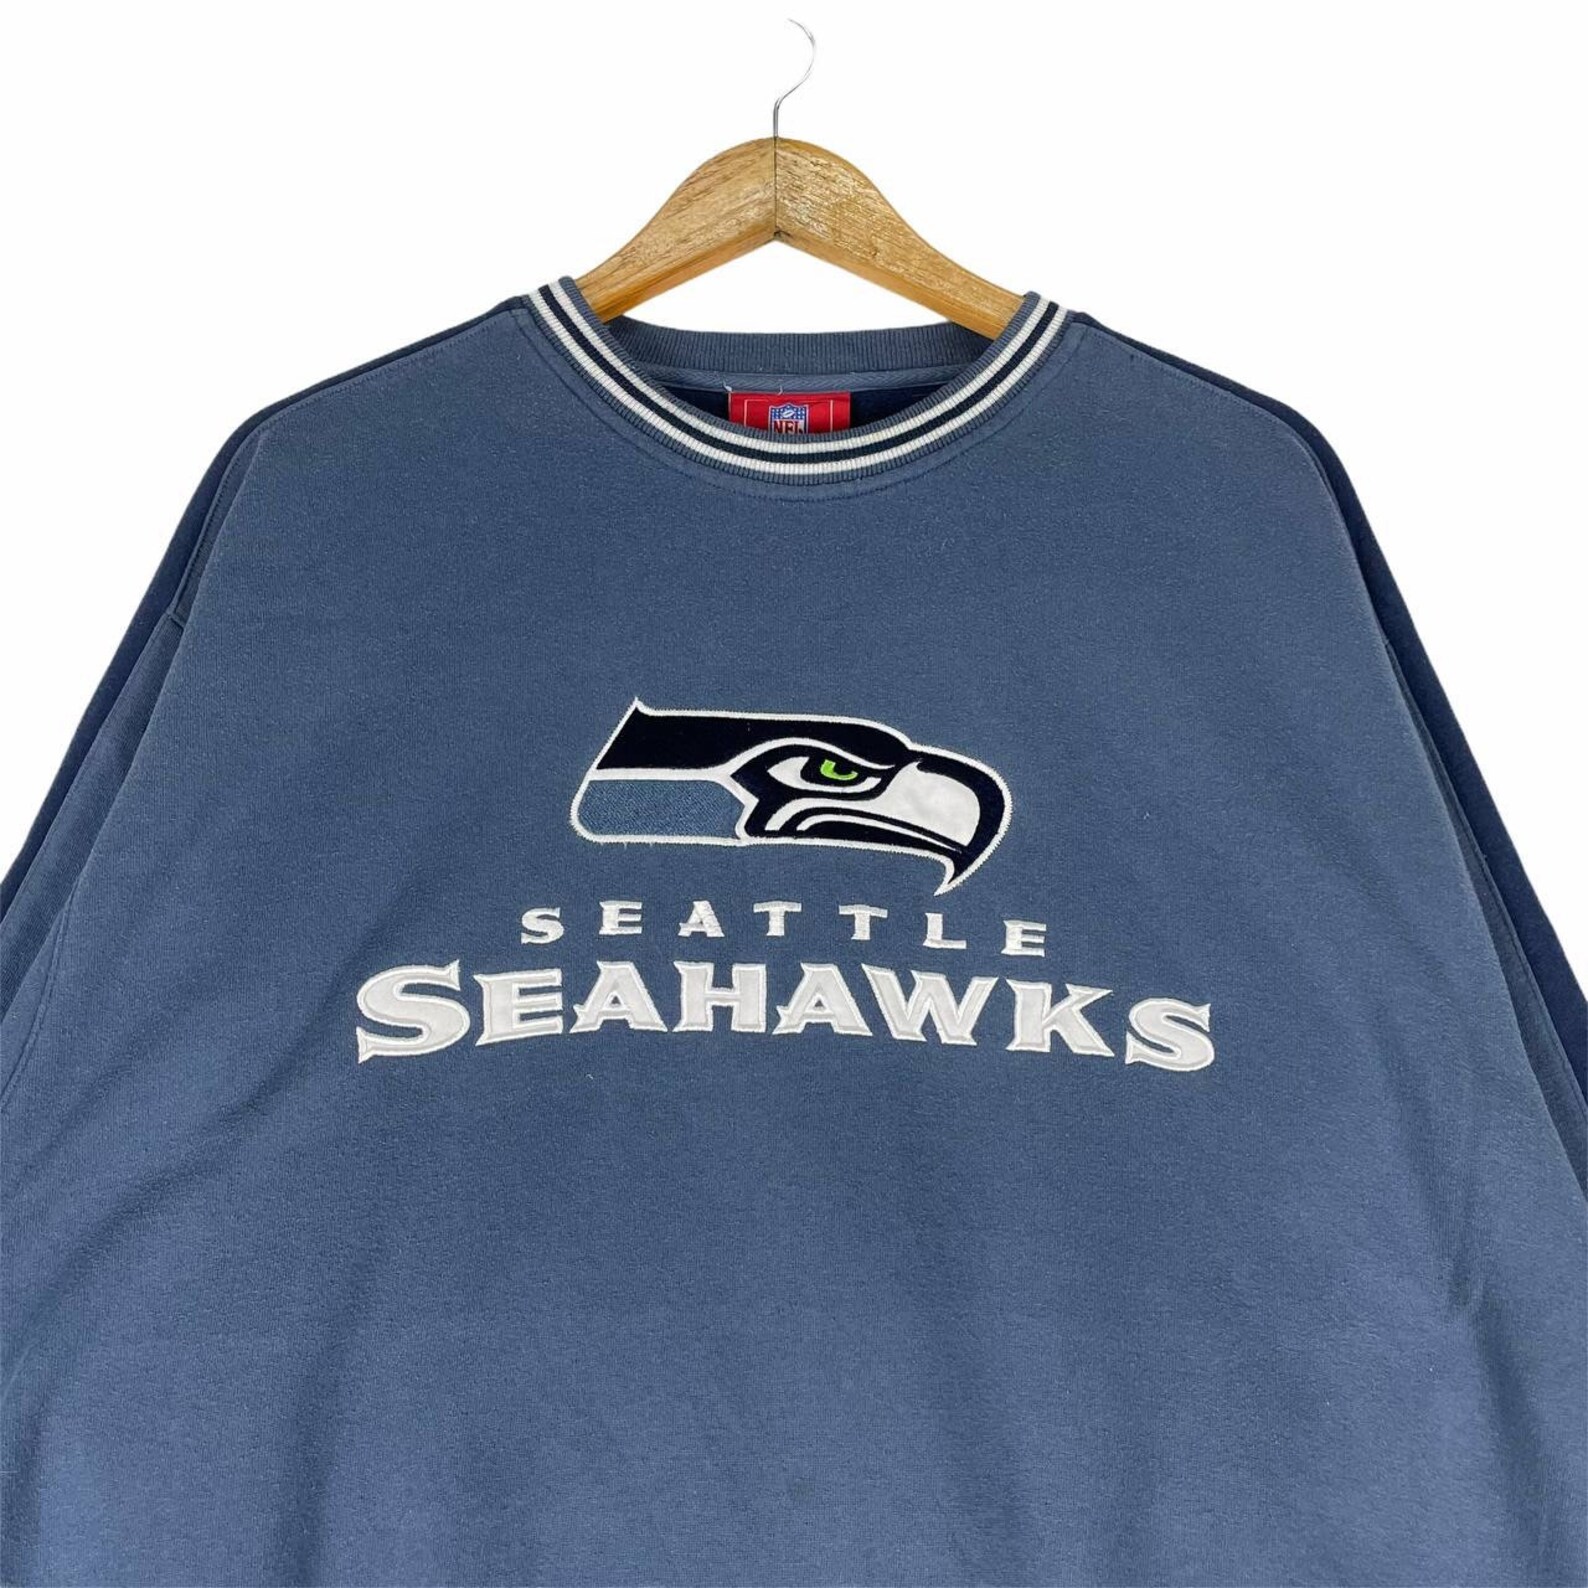 Vintage 90s Seattle Seahawks Crewneck Sweatshirt NFL Football | Etsy